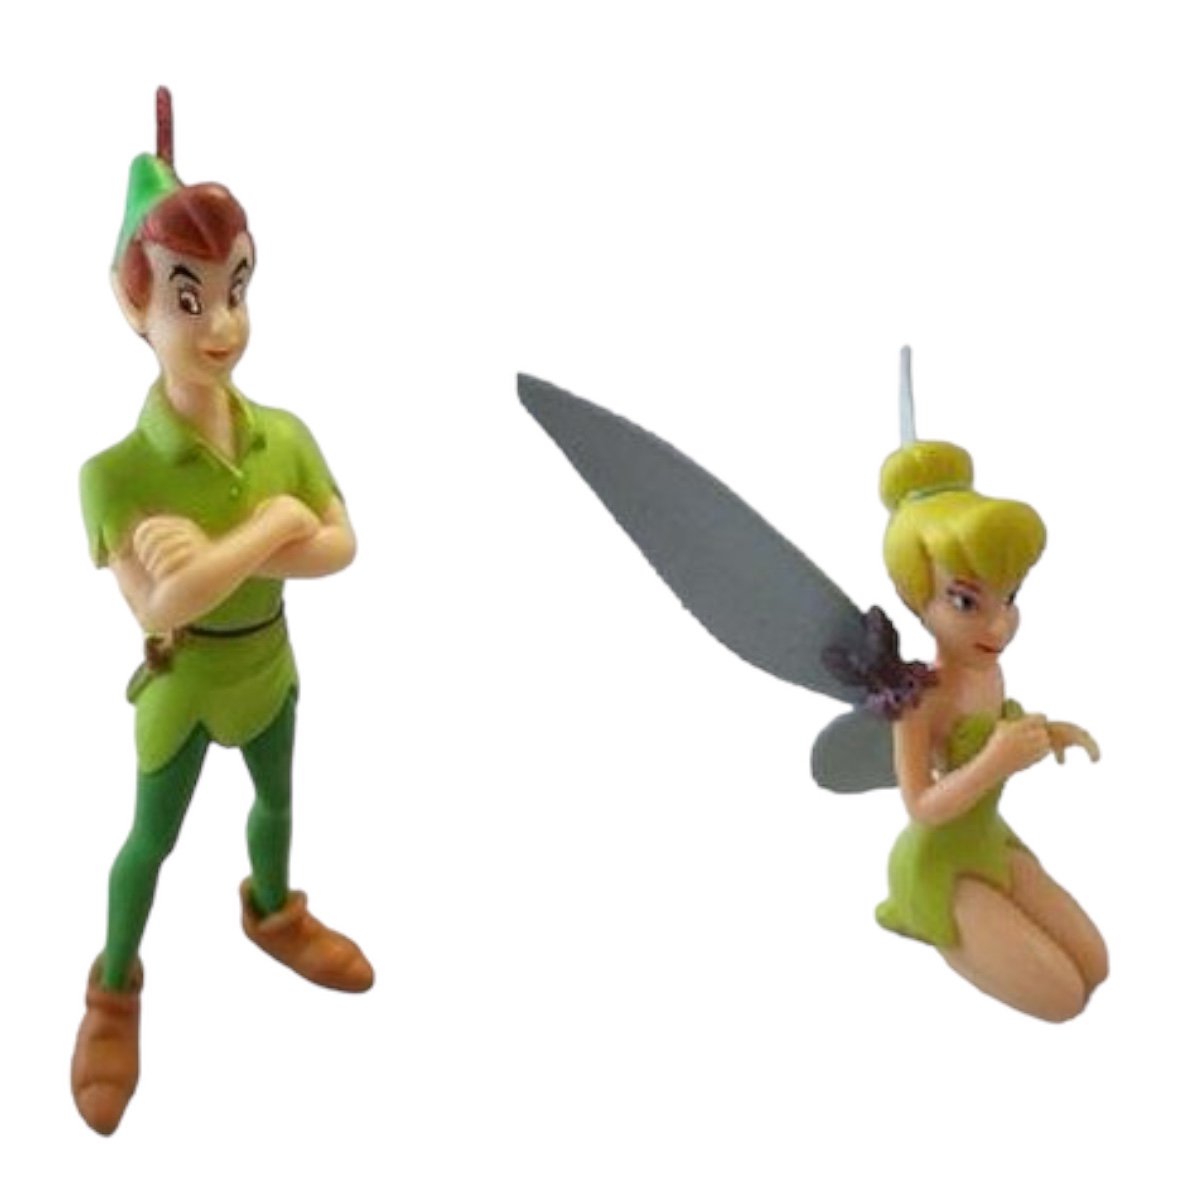 Peter Pan en Tinkerbel (met bliksem op haar schouder) Bullyland set speelfiguurtjes (ca. 6 cm) - Bullyland